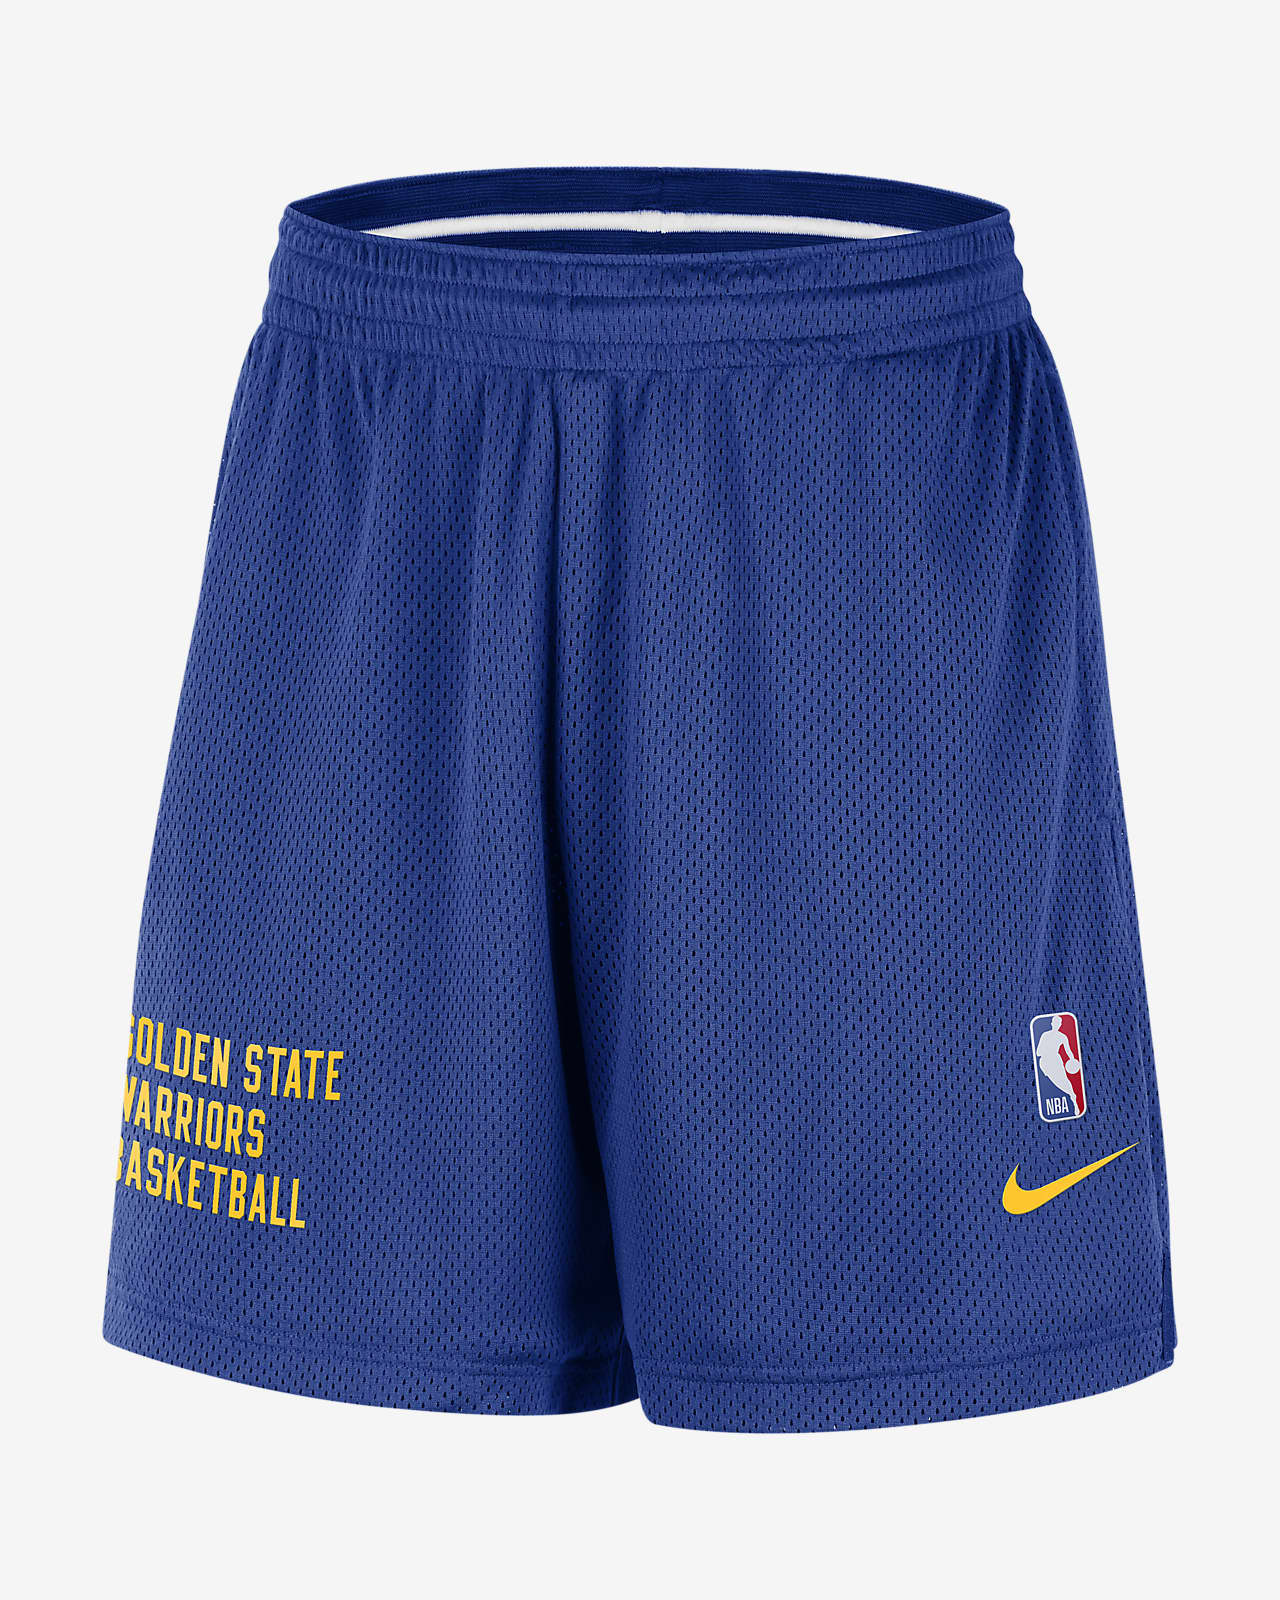 金州勇士队 Nike NBA 男子网眼布短裤